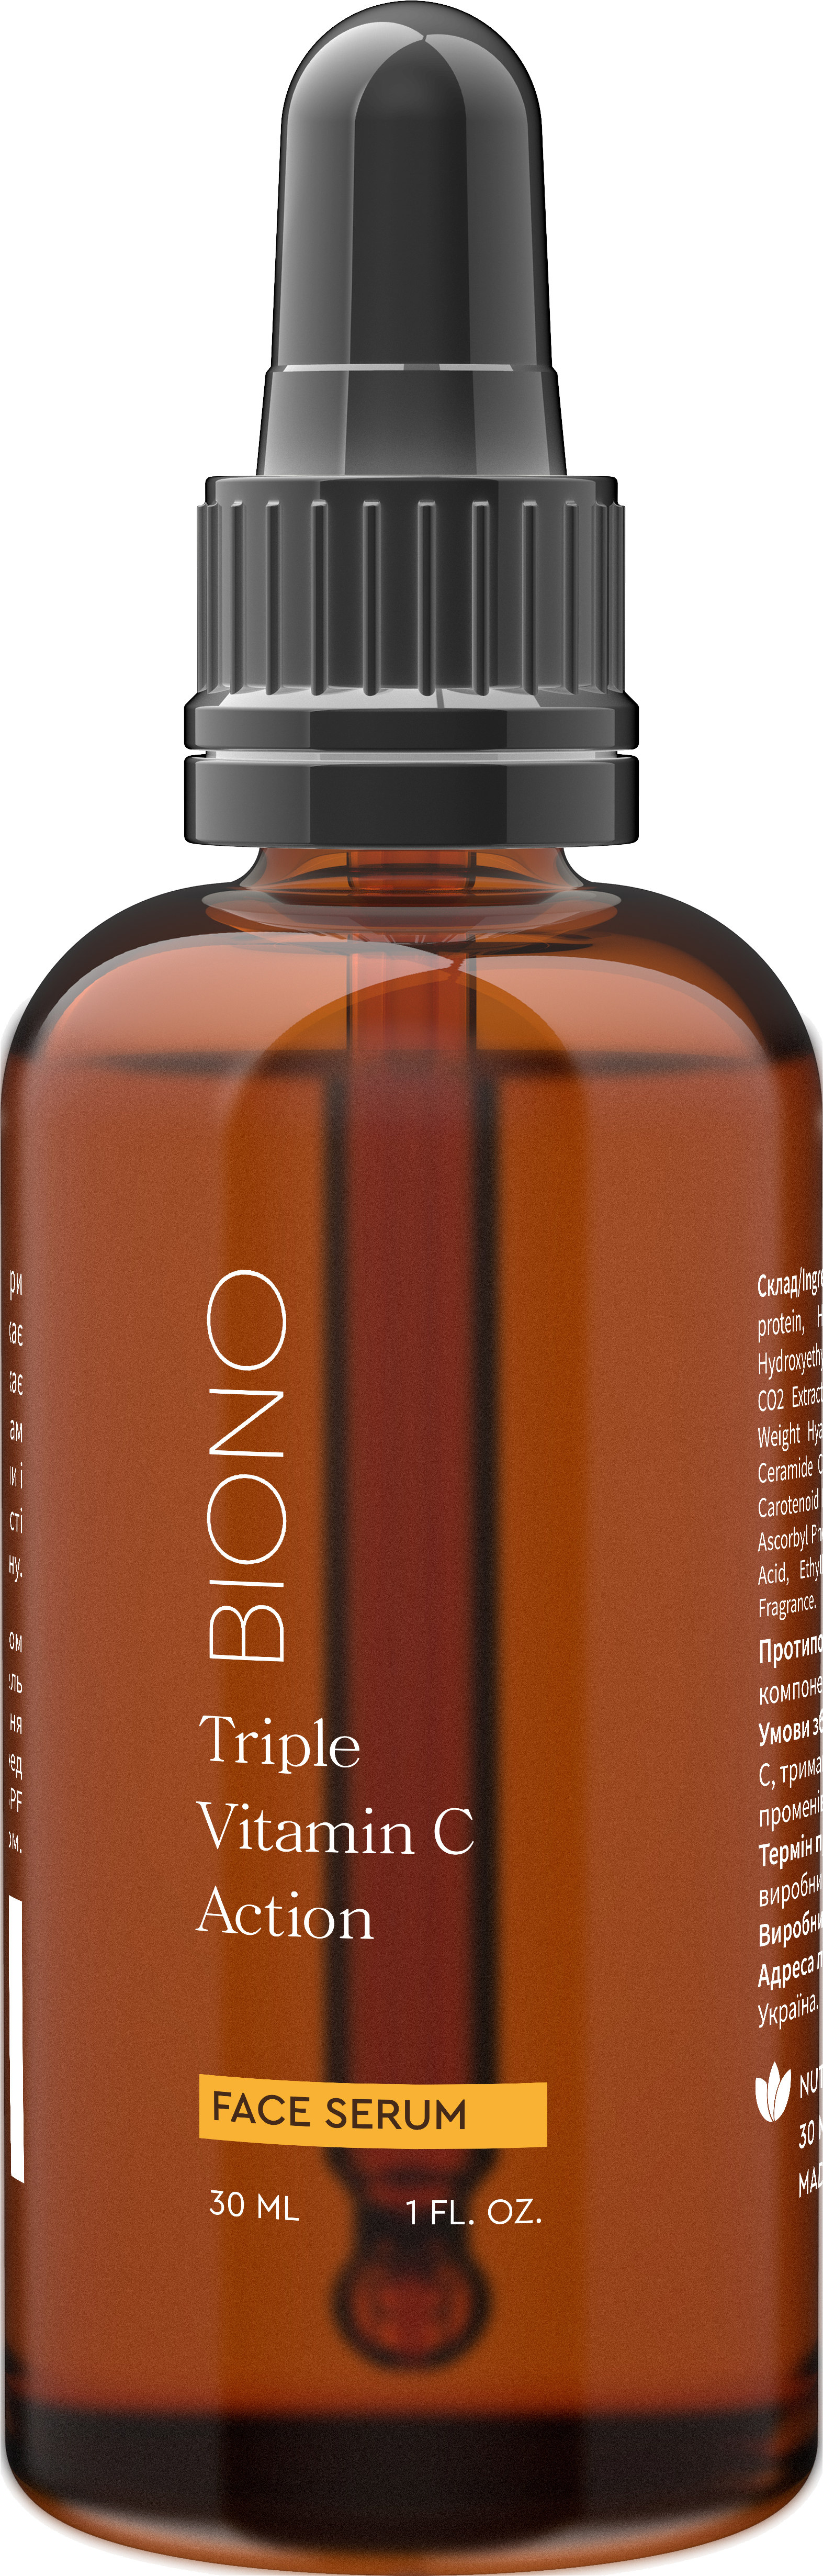 Акция на Сыворотка для лица Biono Triple Vitamin C Action Антиоксидантная для всех типов кожи 30 мл (218251131483/2182511314833) от Rozetka UA